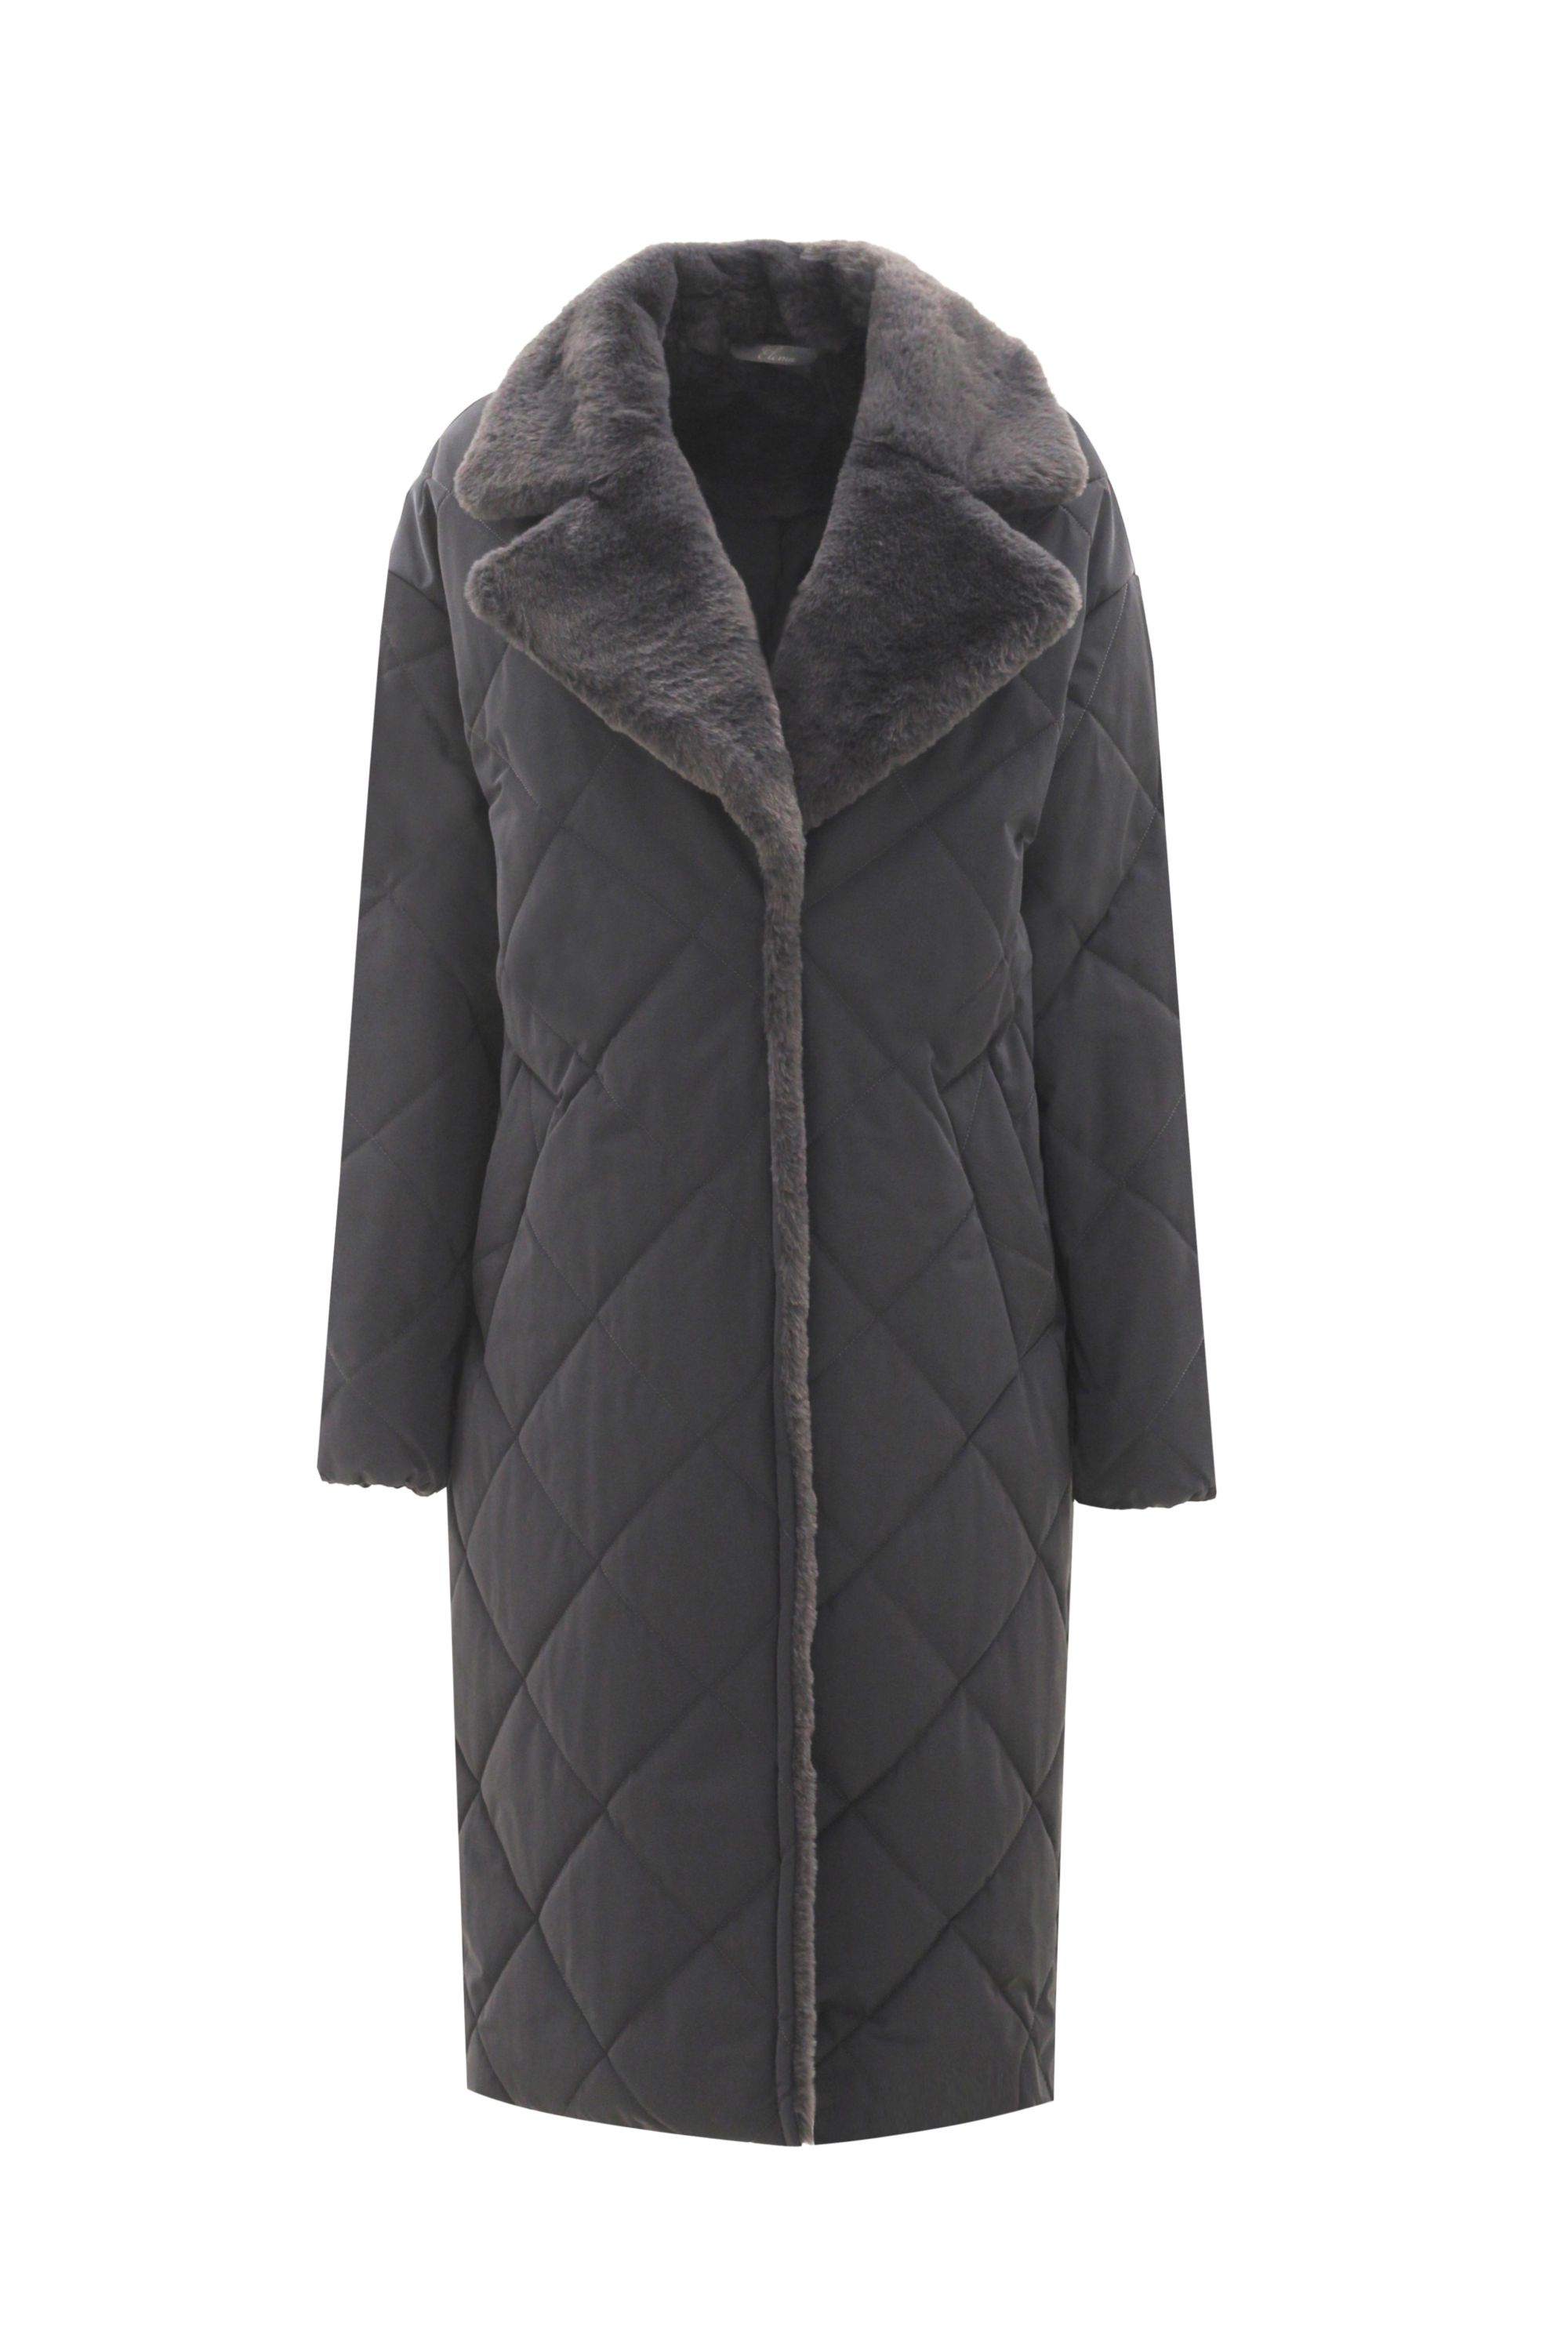 Пальто женское плащевое утепленное 5-12194-1. Фото 1.